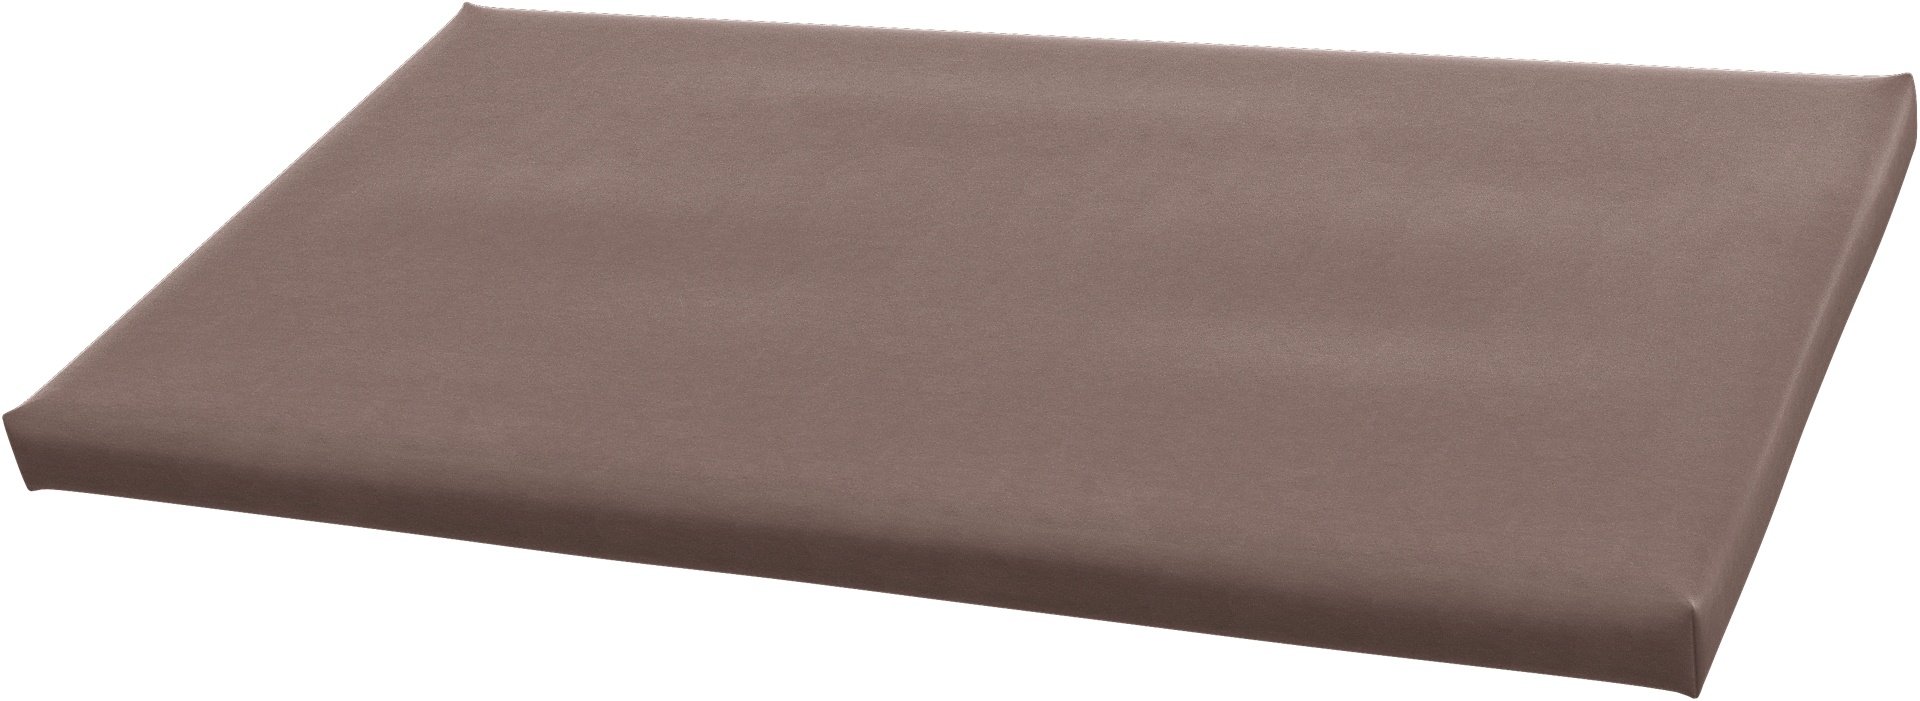 IKEA - Bankkamrat Cushion Cover 90x50x3,5 cm , Lavender, Velvet - Bemz